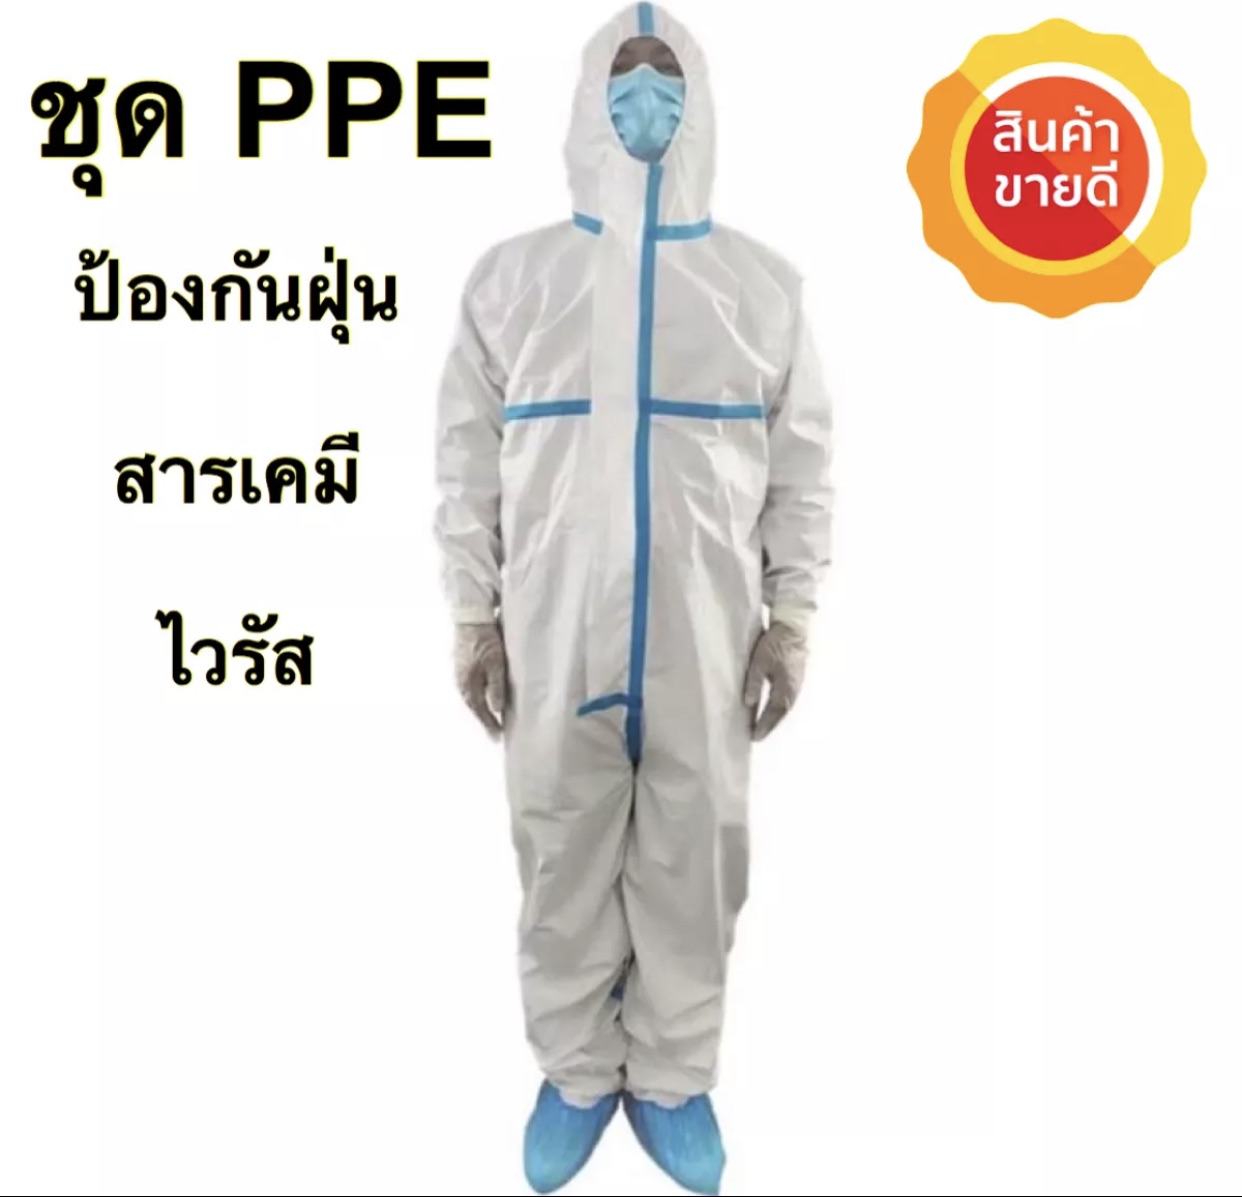 [พร้อมส่ง] ชุดป้องกันสารเคมี ชุด PPE ผ่านมาตรฐาน